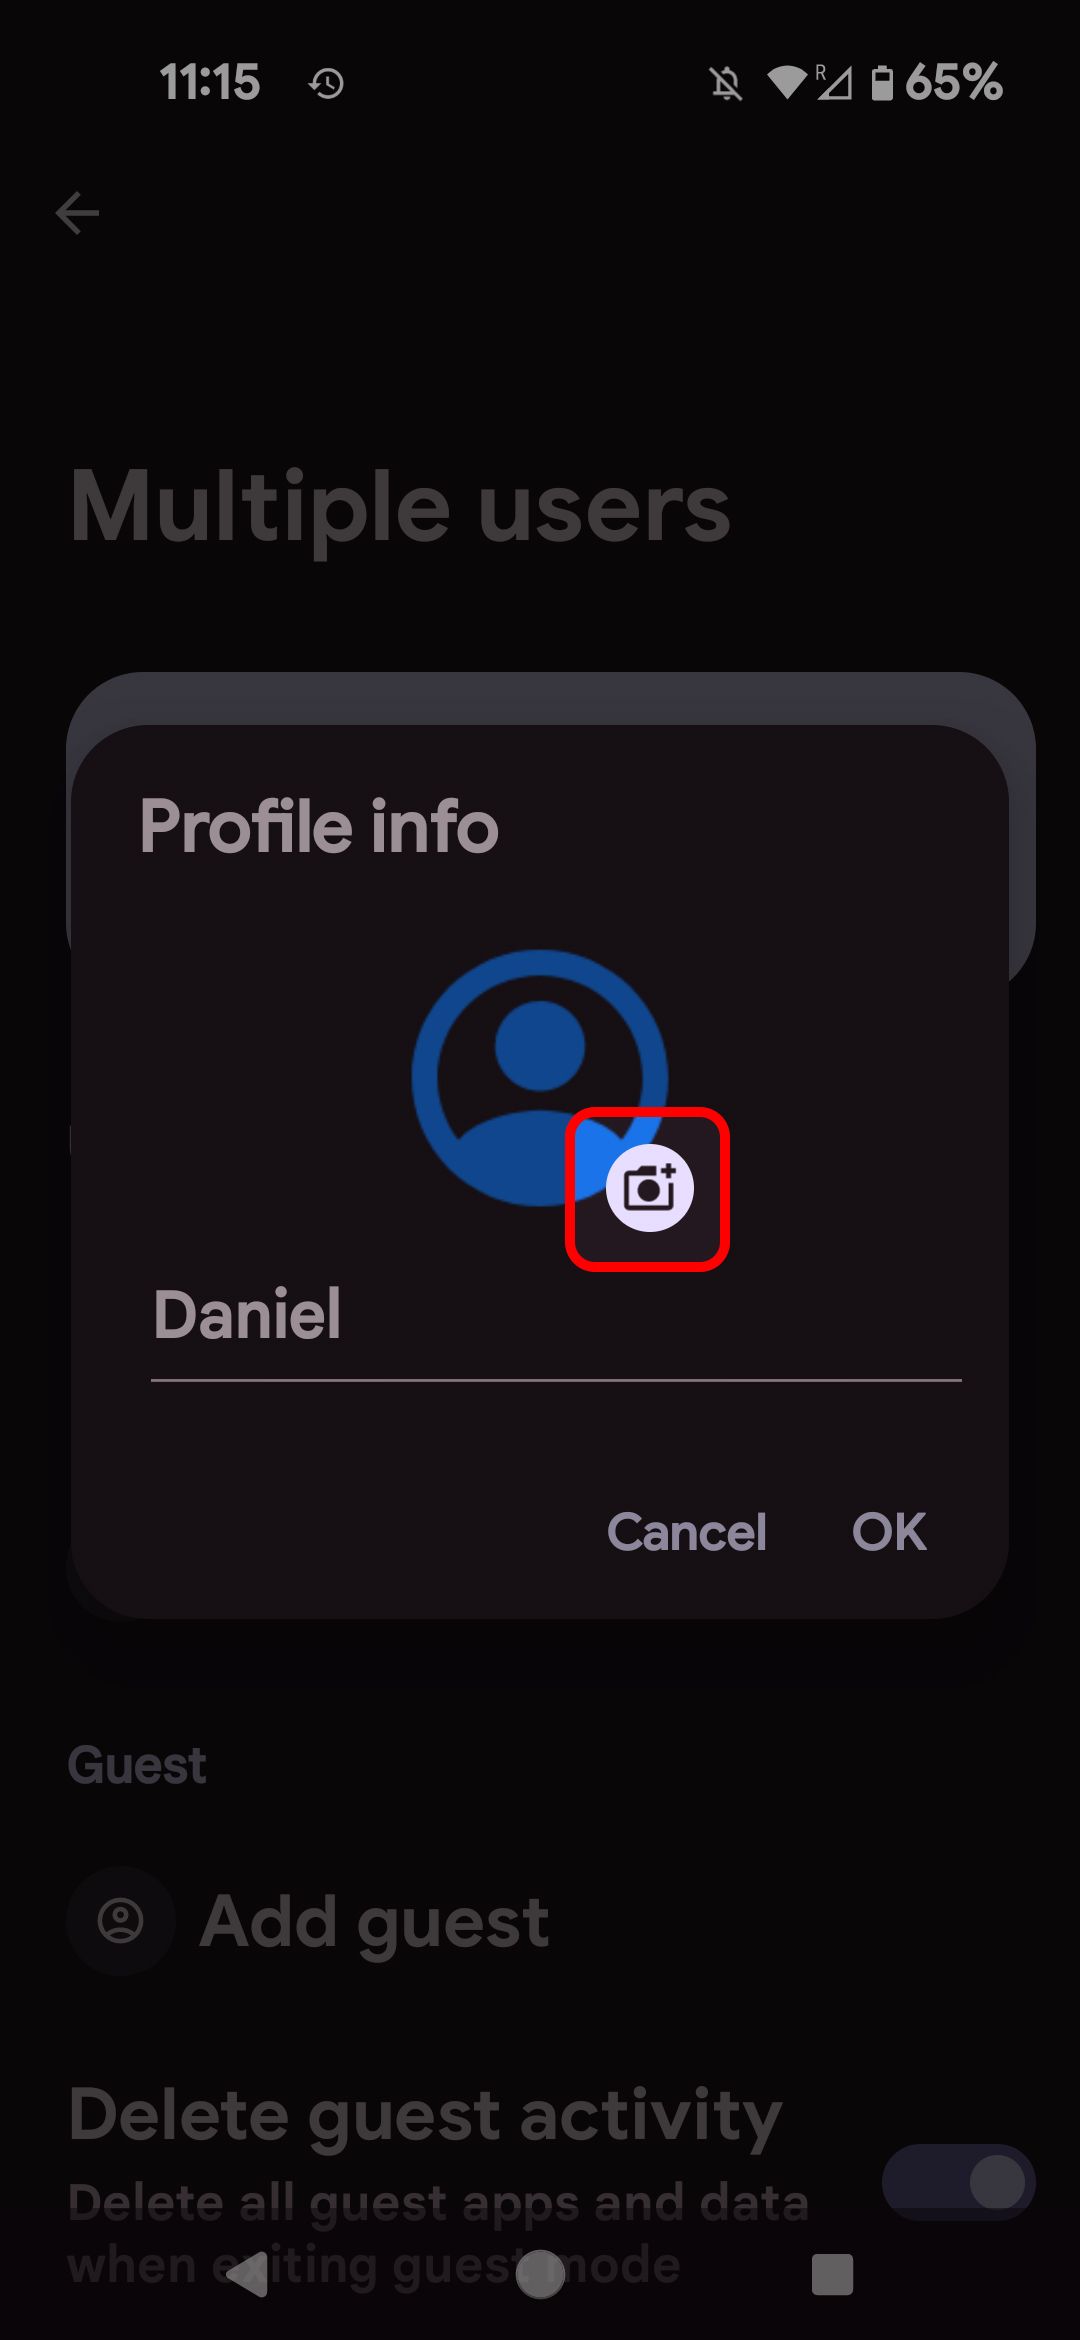 Informações do perfil do usuário Android destacando o ícone da câmera